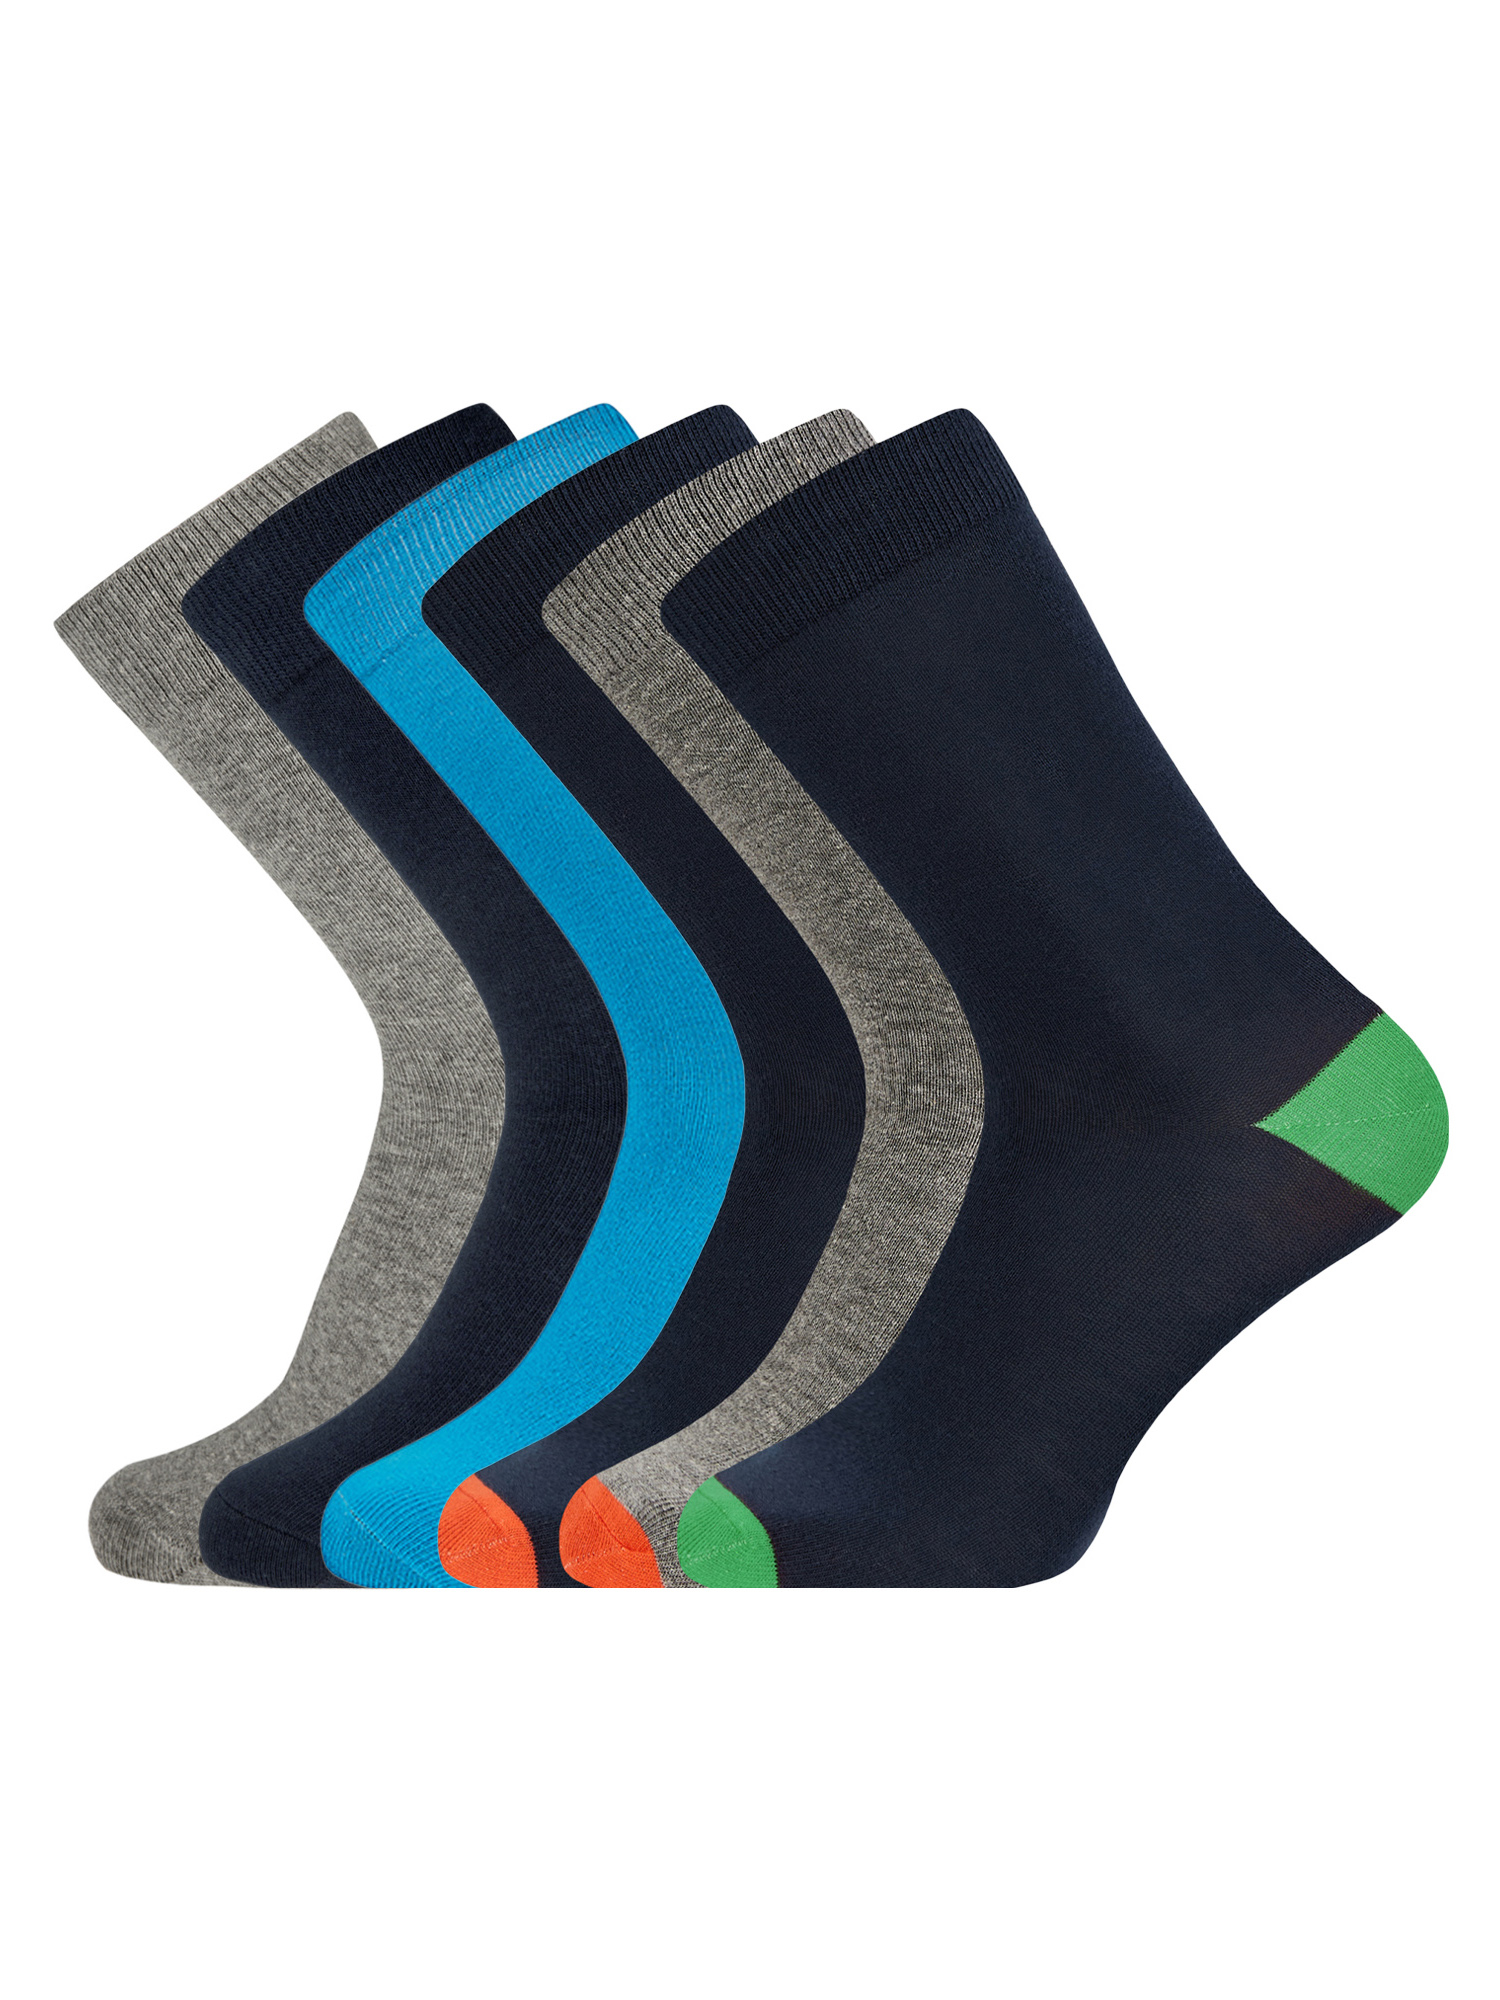 Комплект носков мужских oodji 7B263001T6 разноцветных 40-43